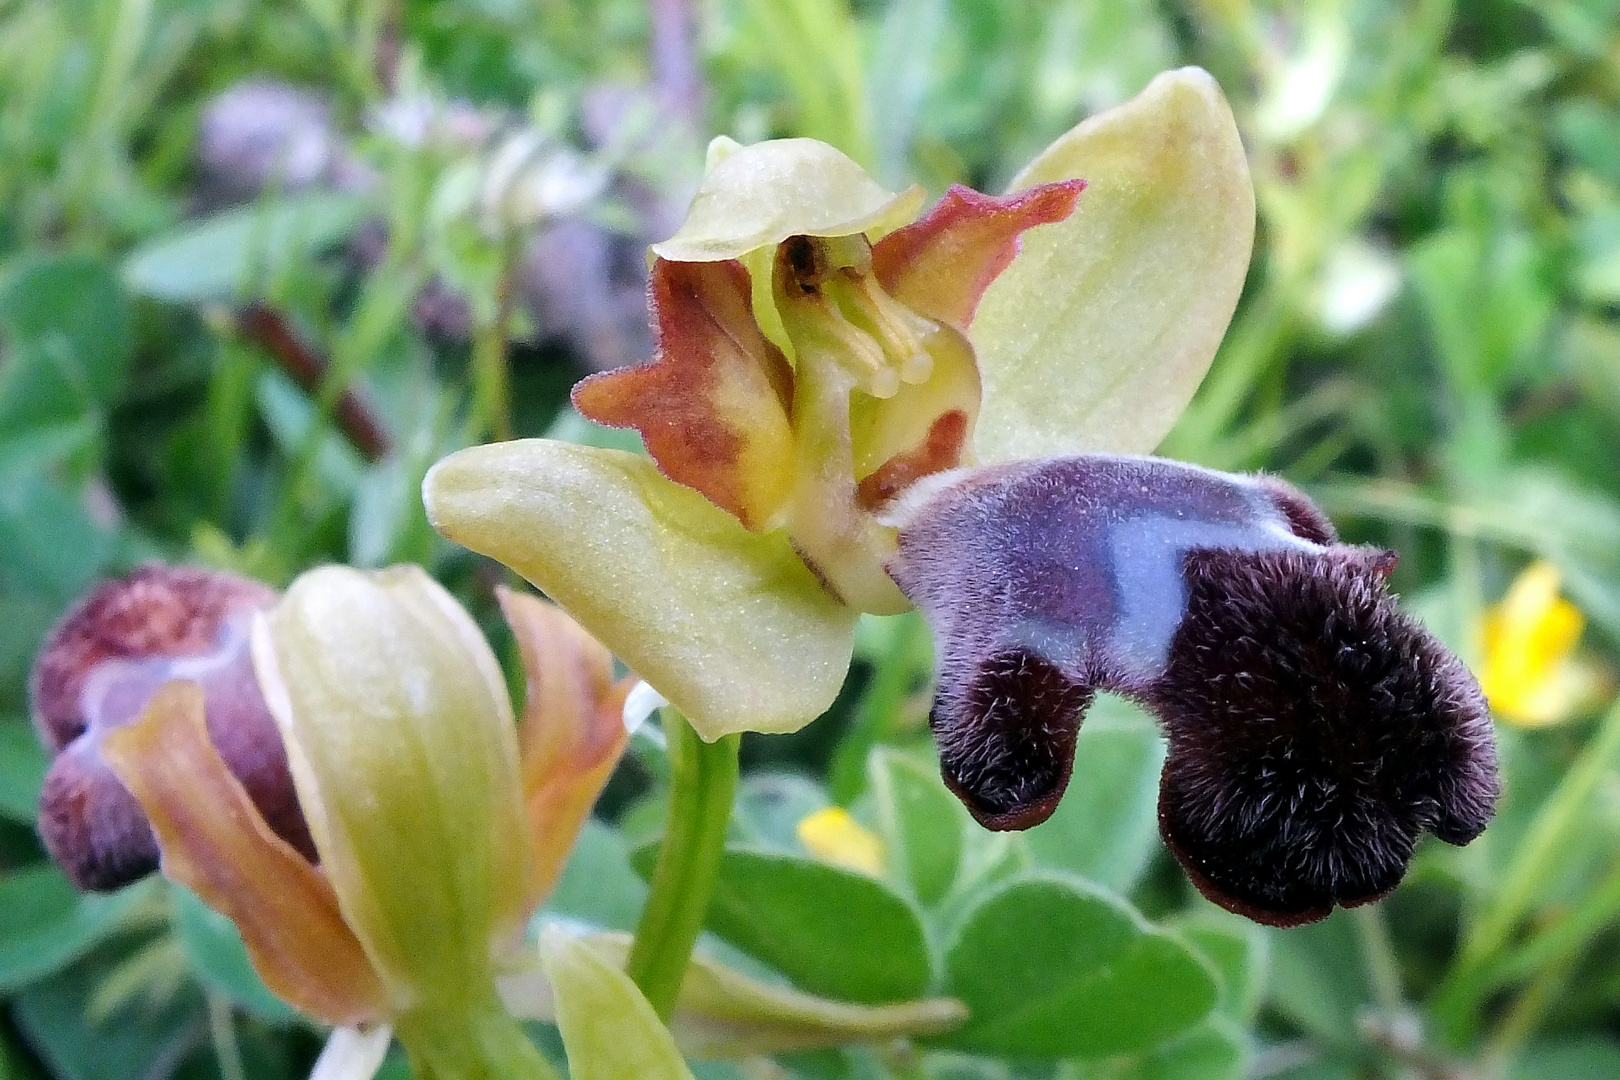 Omega-Ragwurz (Ophrys omegaifera)